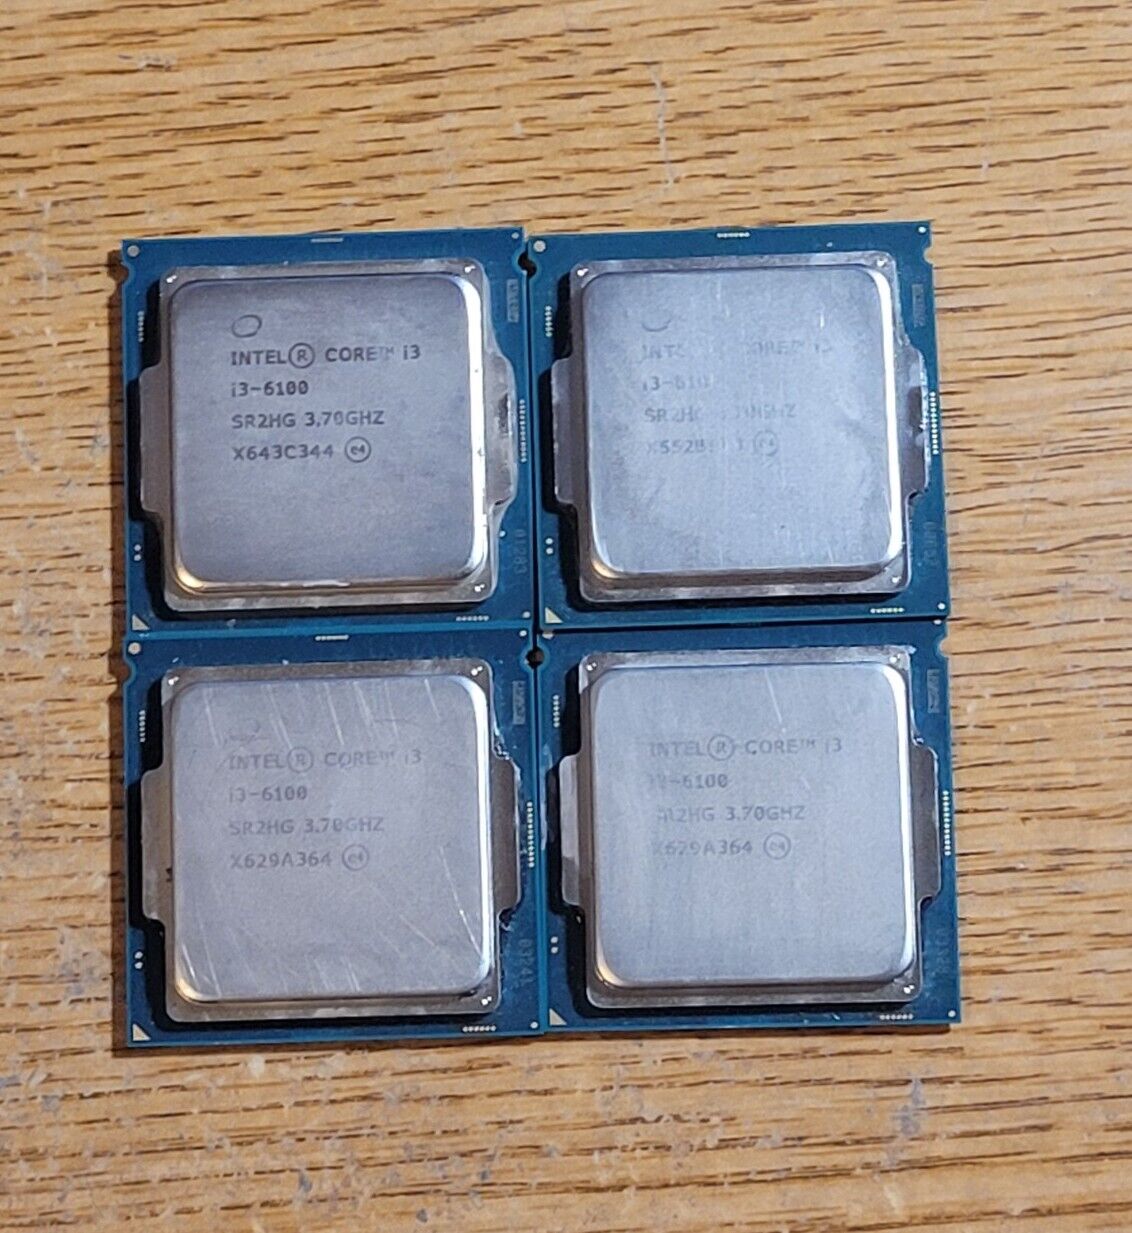 Lot of 4 Intel Core i3-6100 SR2HG 3.70GHz Dual Core LGA1151 Processor CPU